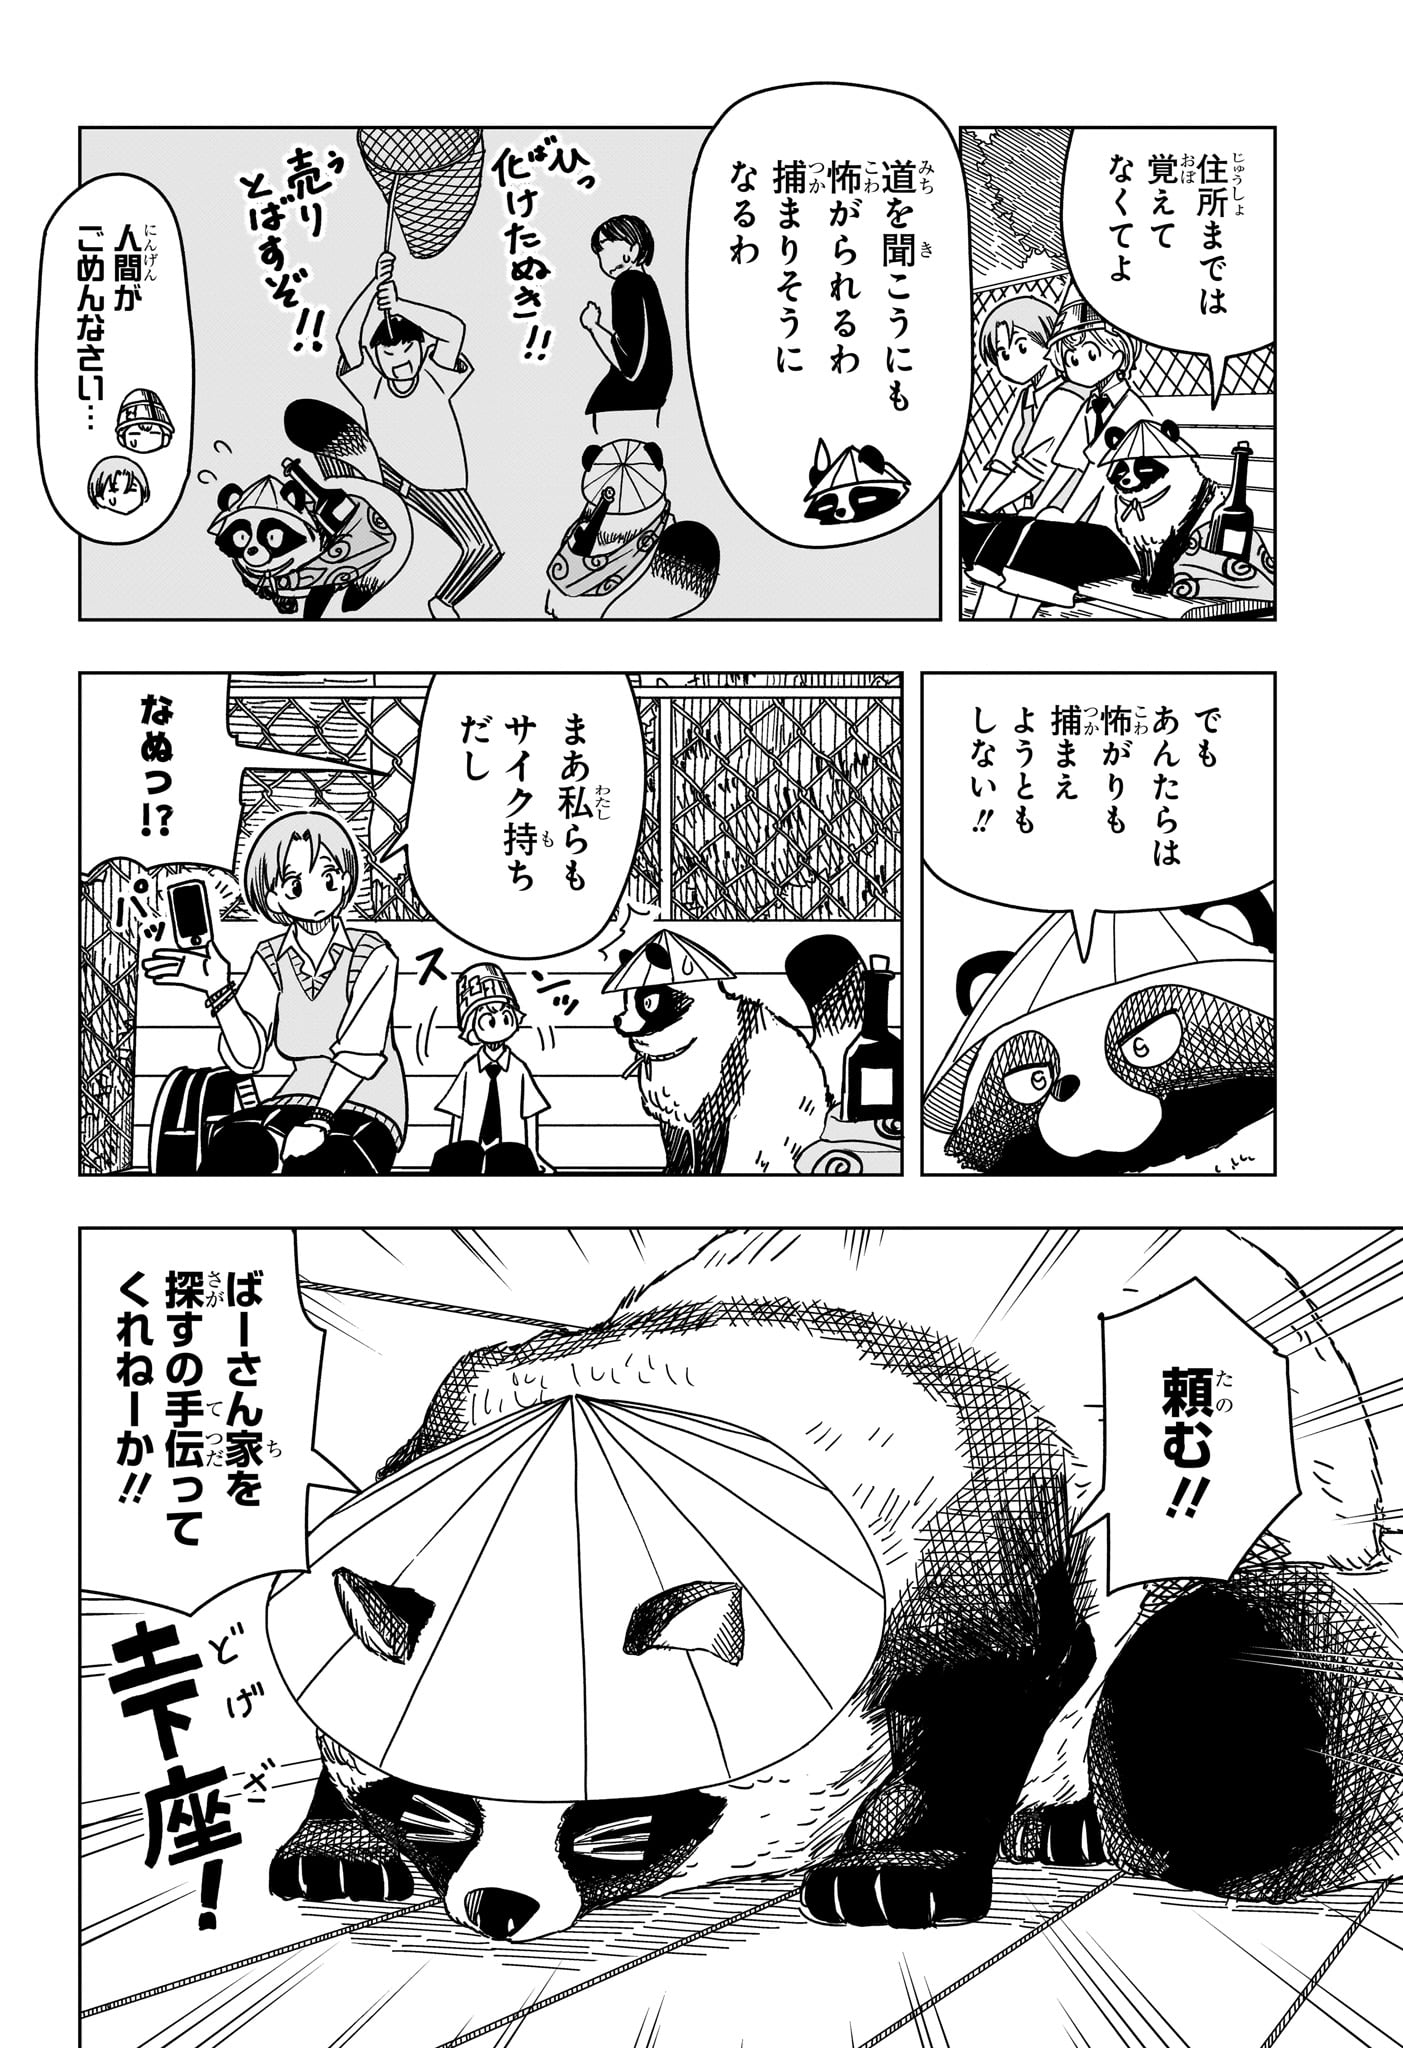 Saikuru Biyori - Chapter 9 - Page 6